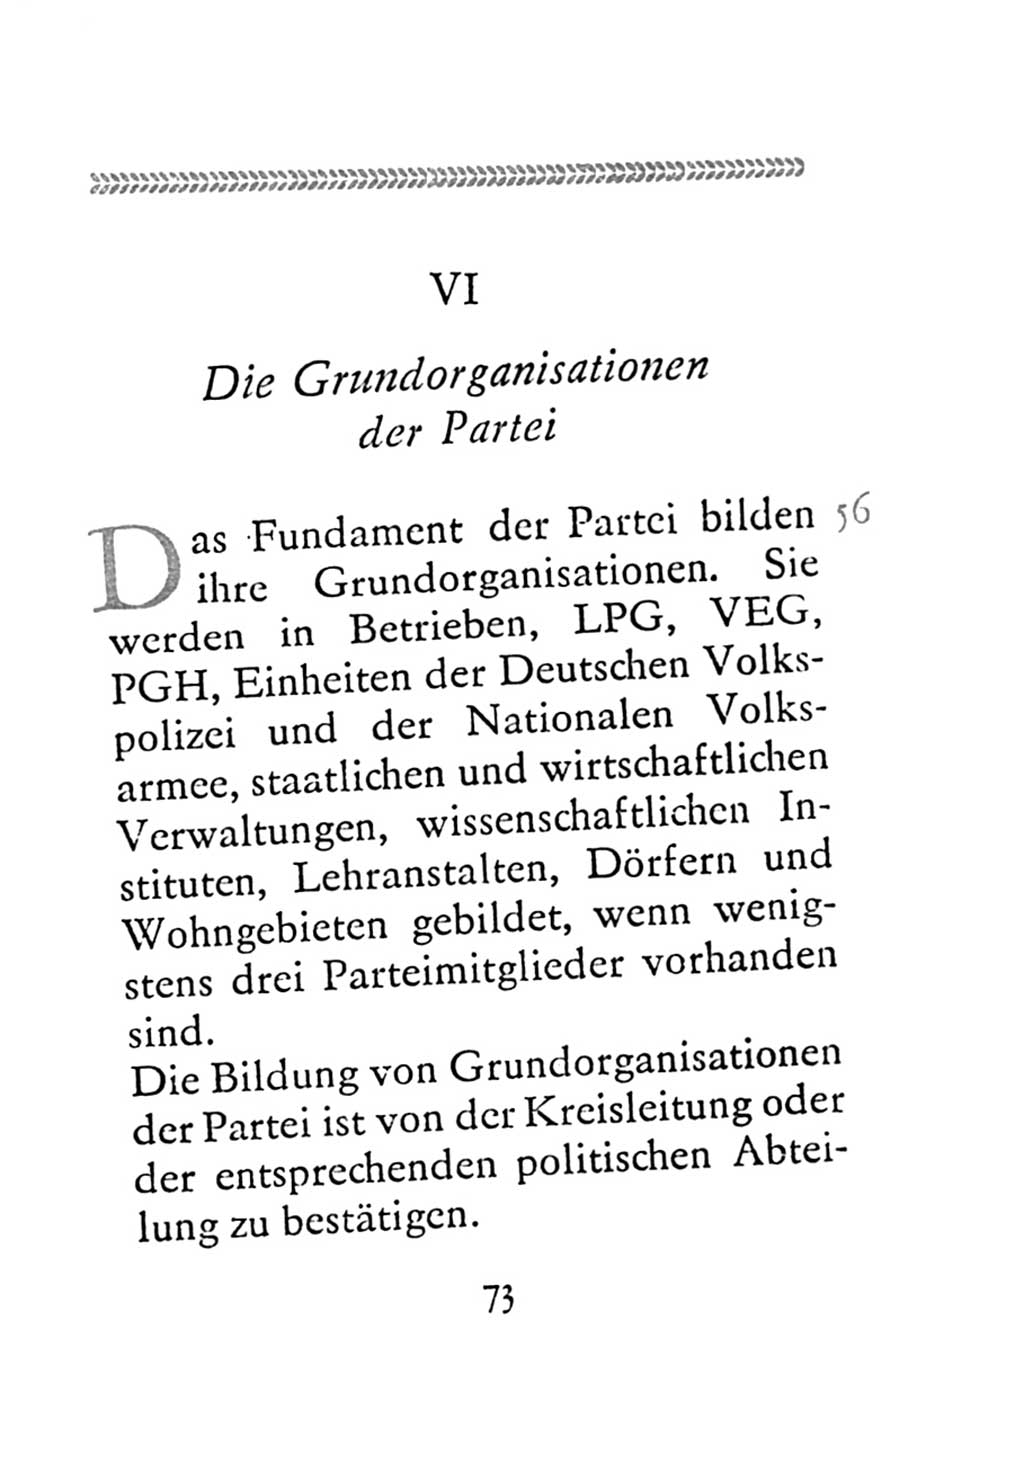 Statut der Sozialistischen Einheitspartei Deutschlands (SED) 1971, Seite 73 (St. SED DDR 1971, S. 73)